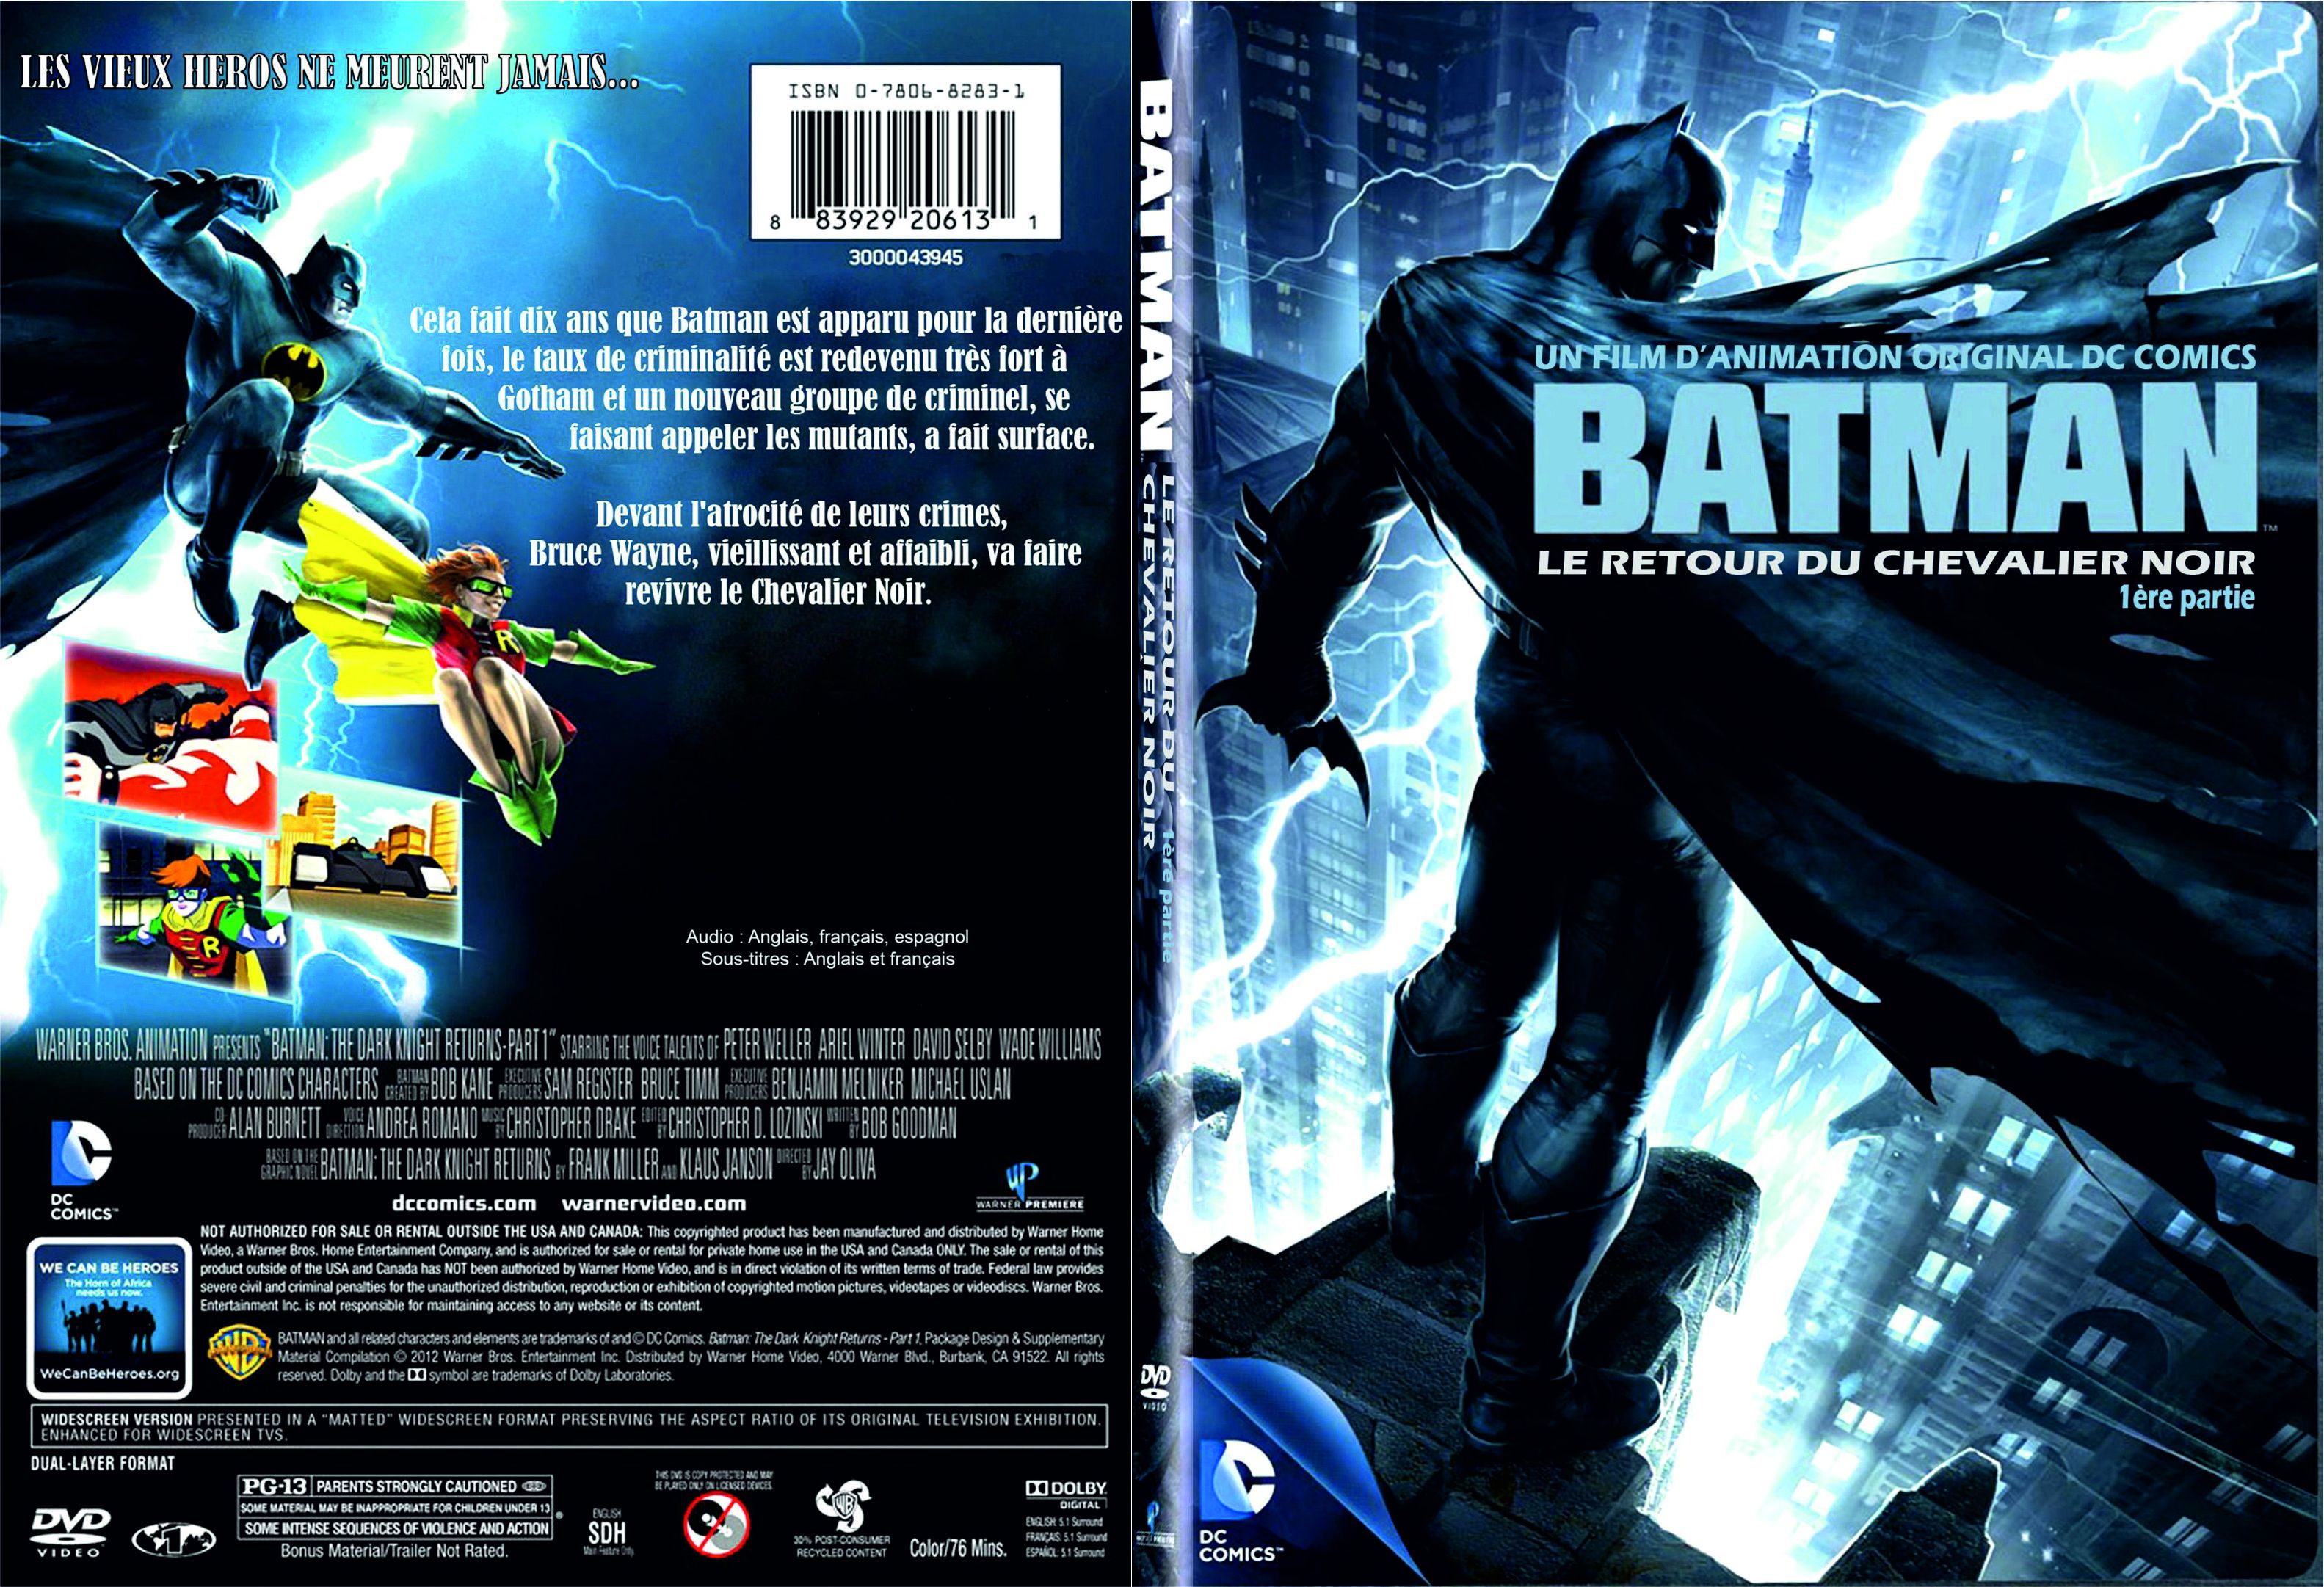 Jaquette DVD Batman Le retour du chevalier noir custom - SLIM